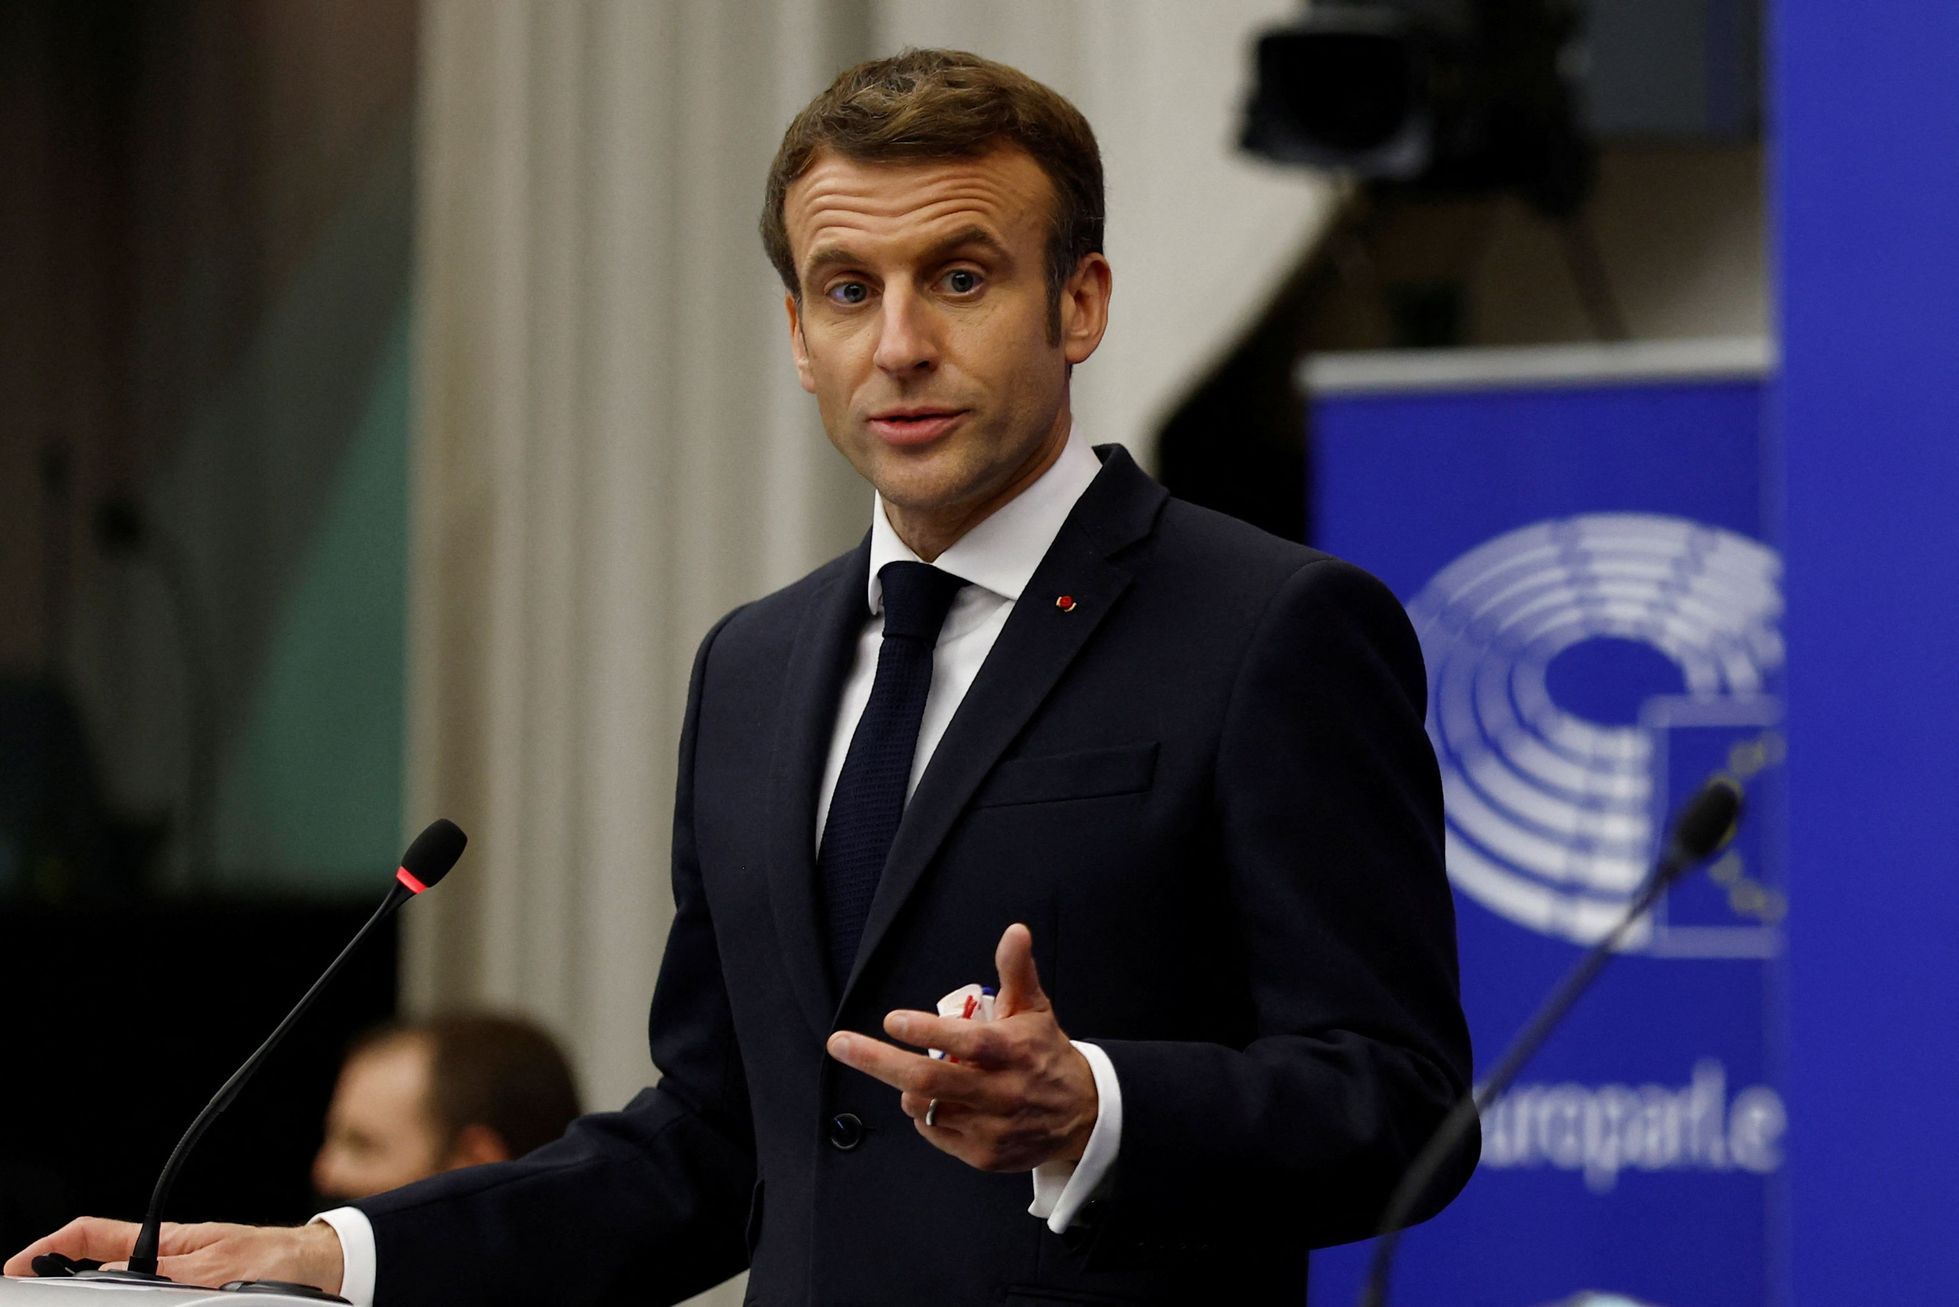 Il y a 12 candidats en lice pour la présidence française, Macron a la meilleure chance